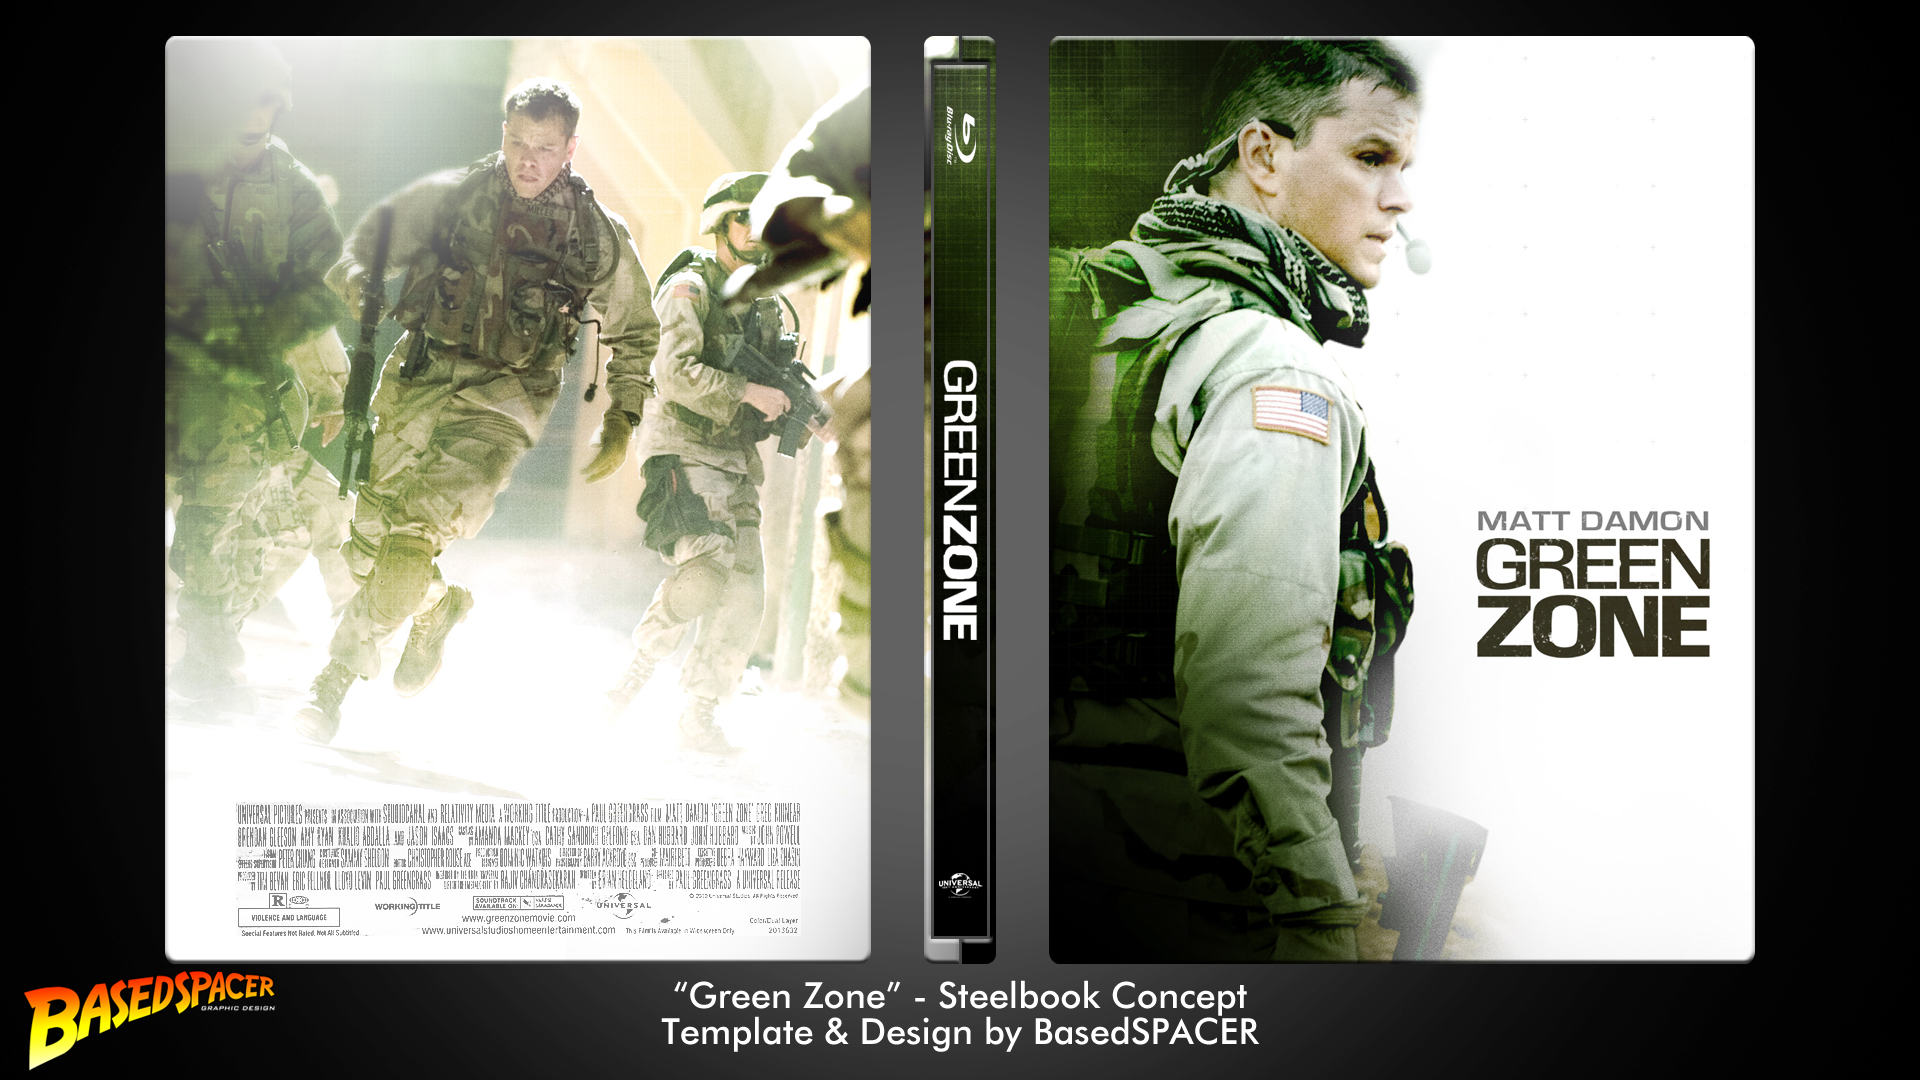 Green Zone - Steelbook Concept box cover